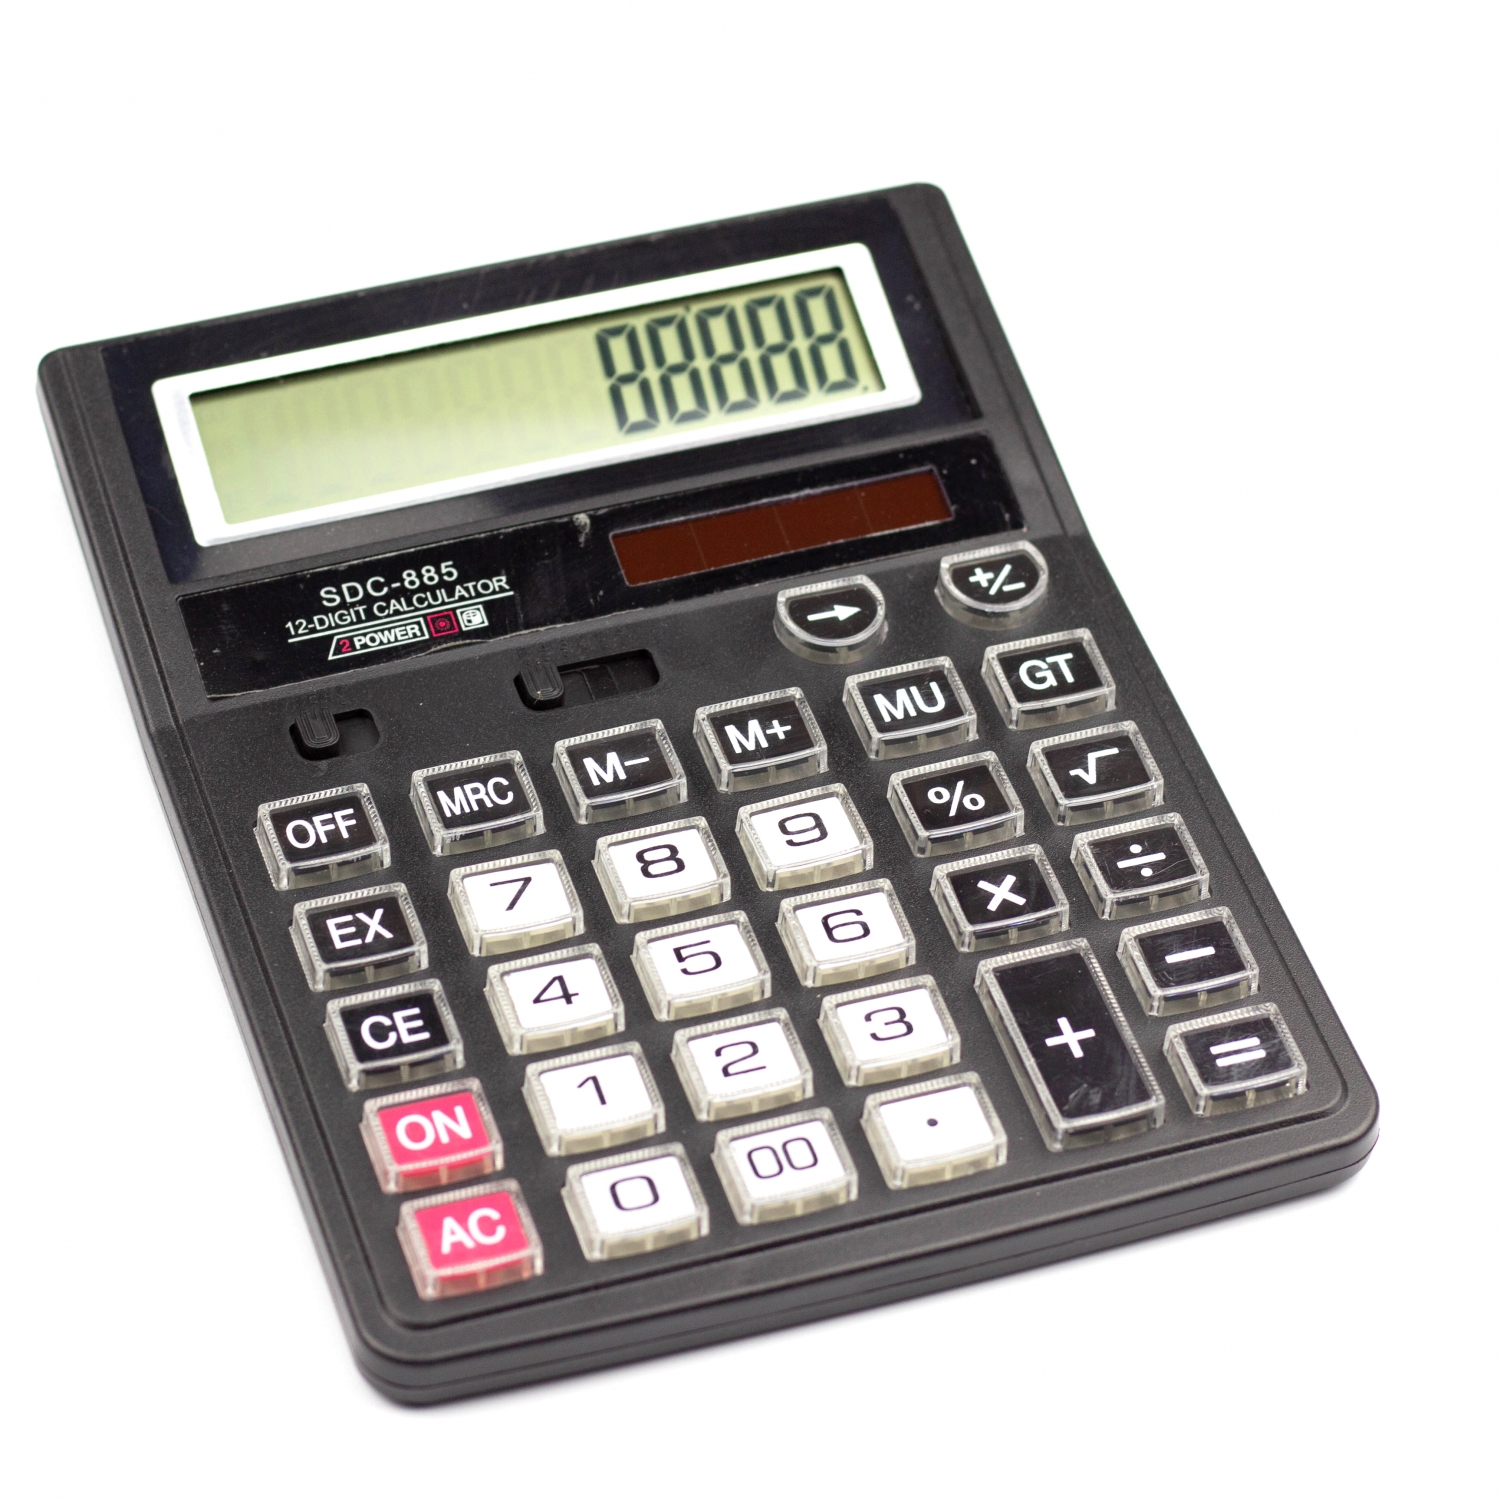 Калькулятор SDC-885 в коробке 12 разрядный AL6350 - Заинск 